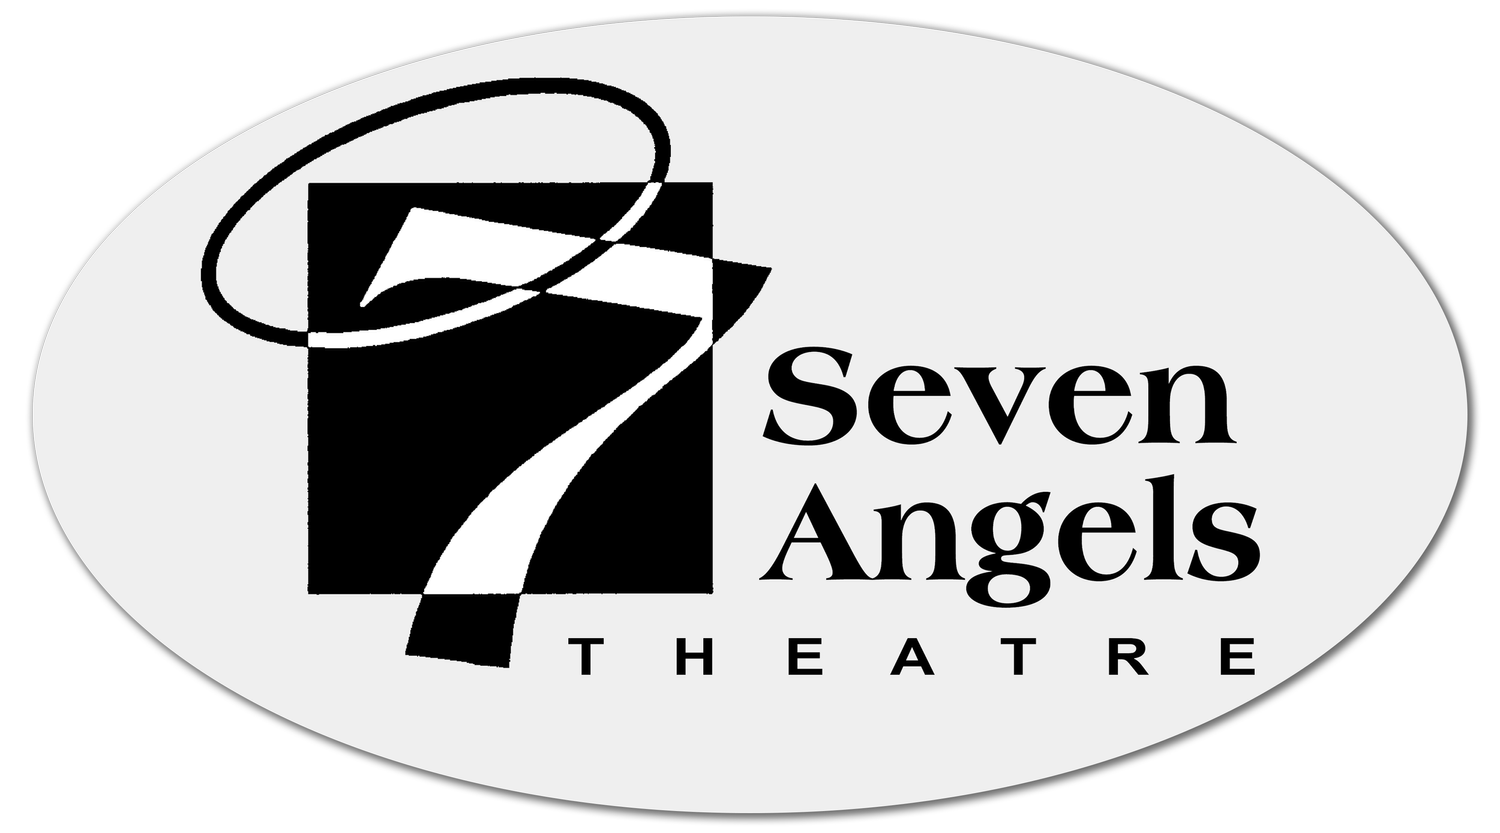 Seven Angels Theatre